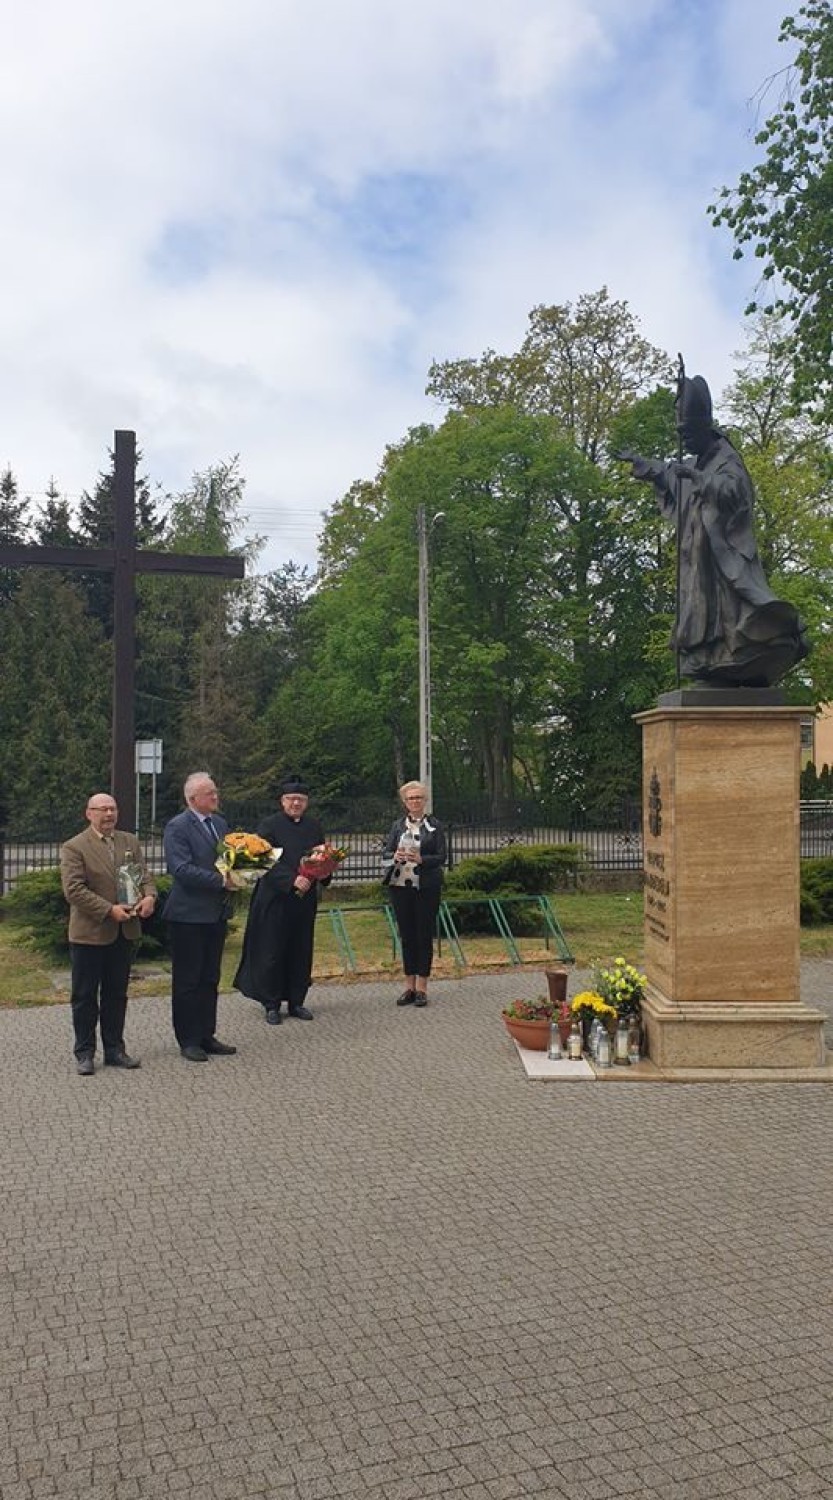 Złożyli kwiaty pod pomnikiem Jana Pawła II w Gołańczy. Nie mieli maseczek